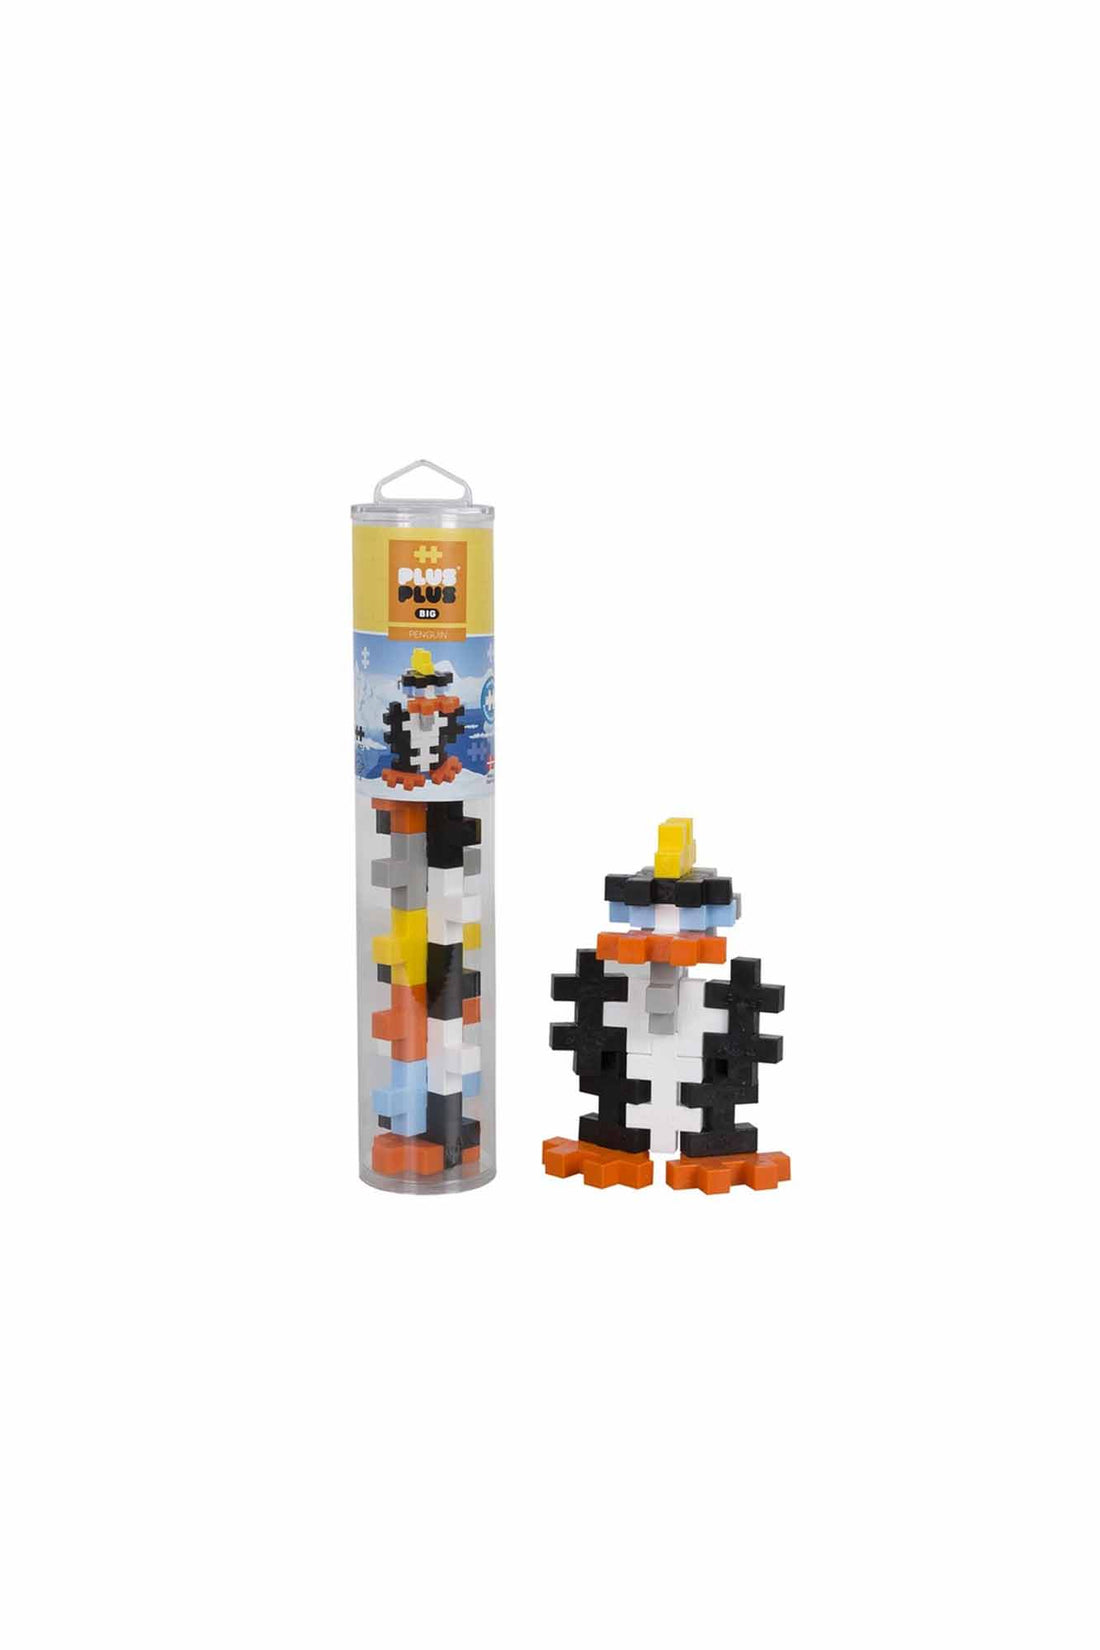 PLUS-PLUS Big Penguin - 15 pieces Tube